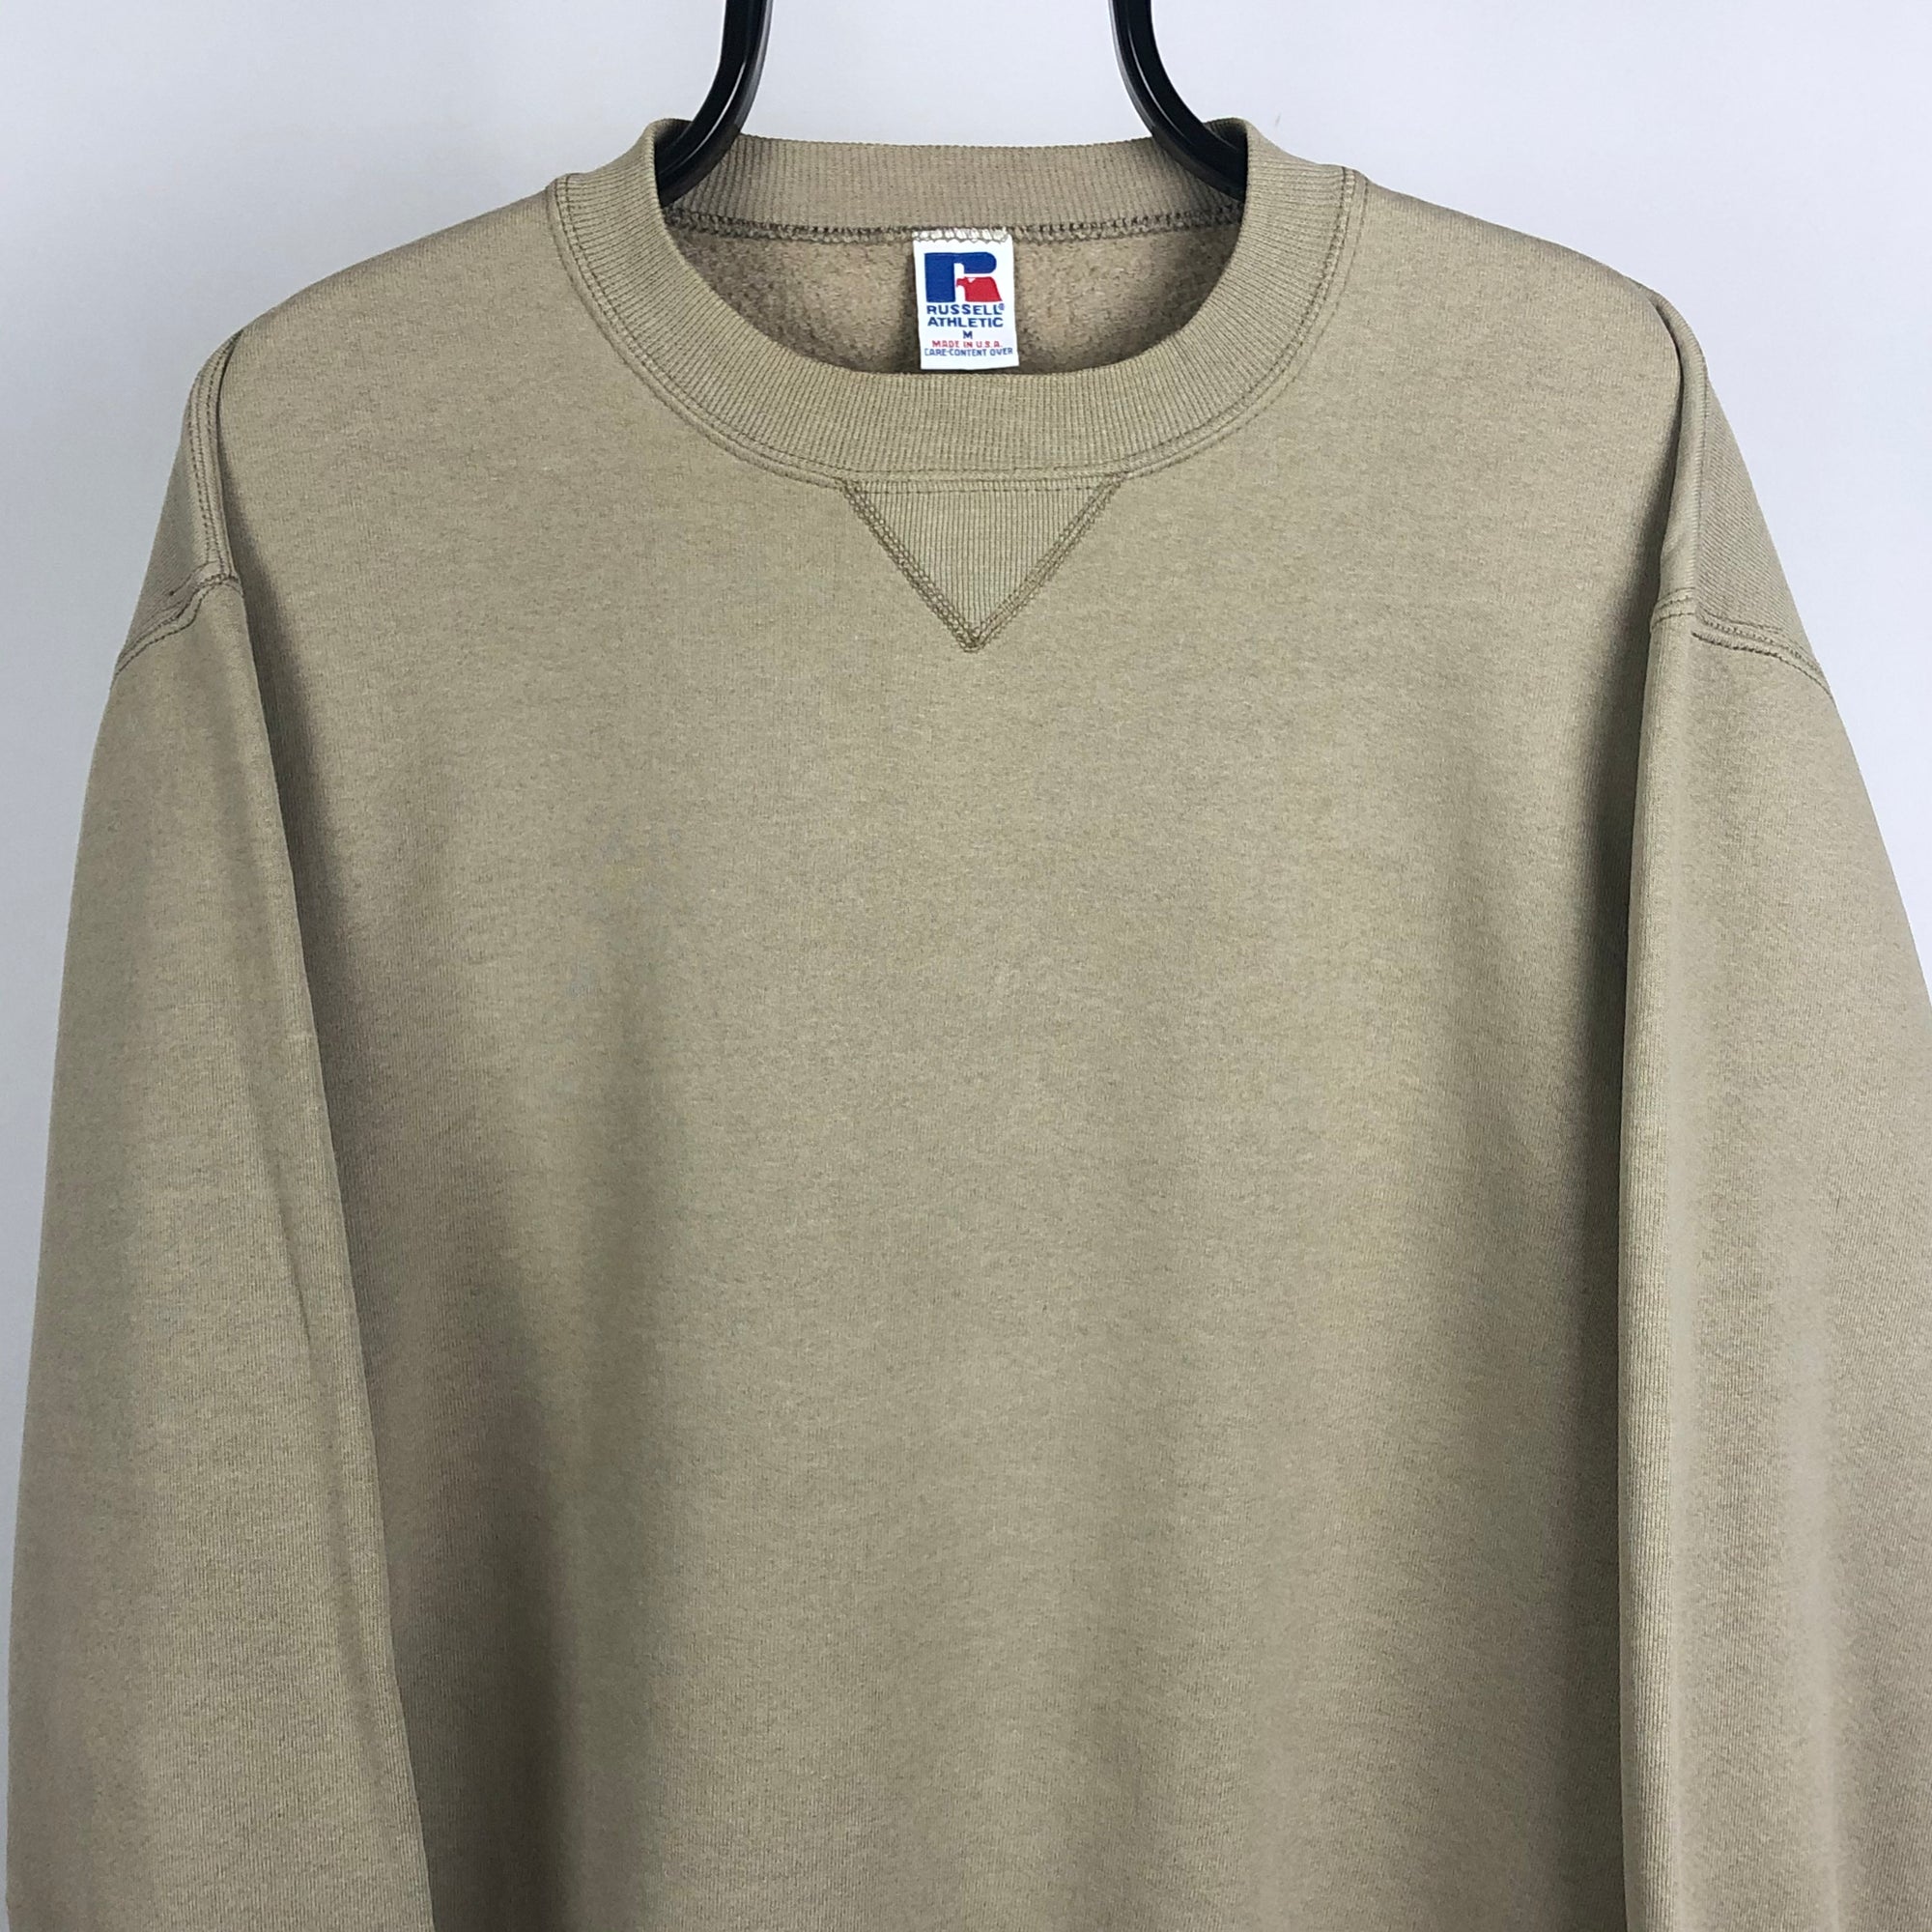 Vintage  Russell Athletic Sweatshirt in Beige - Men's Medium/Women's Large